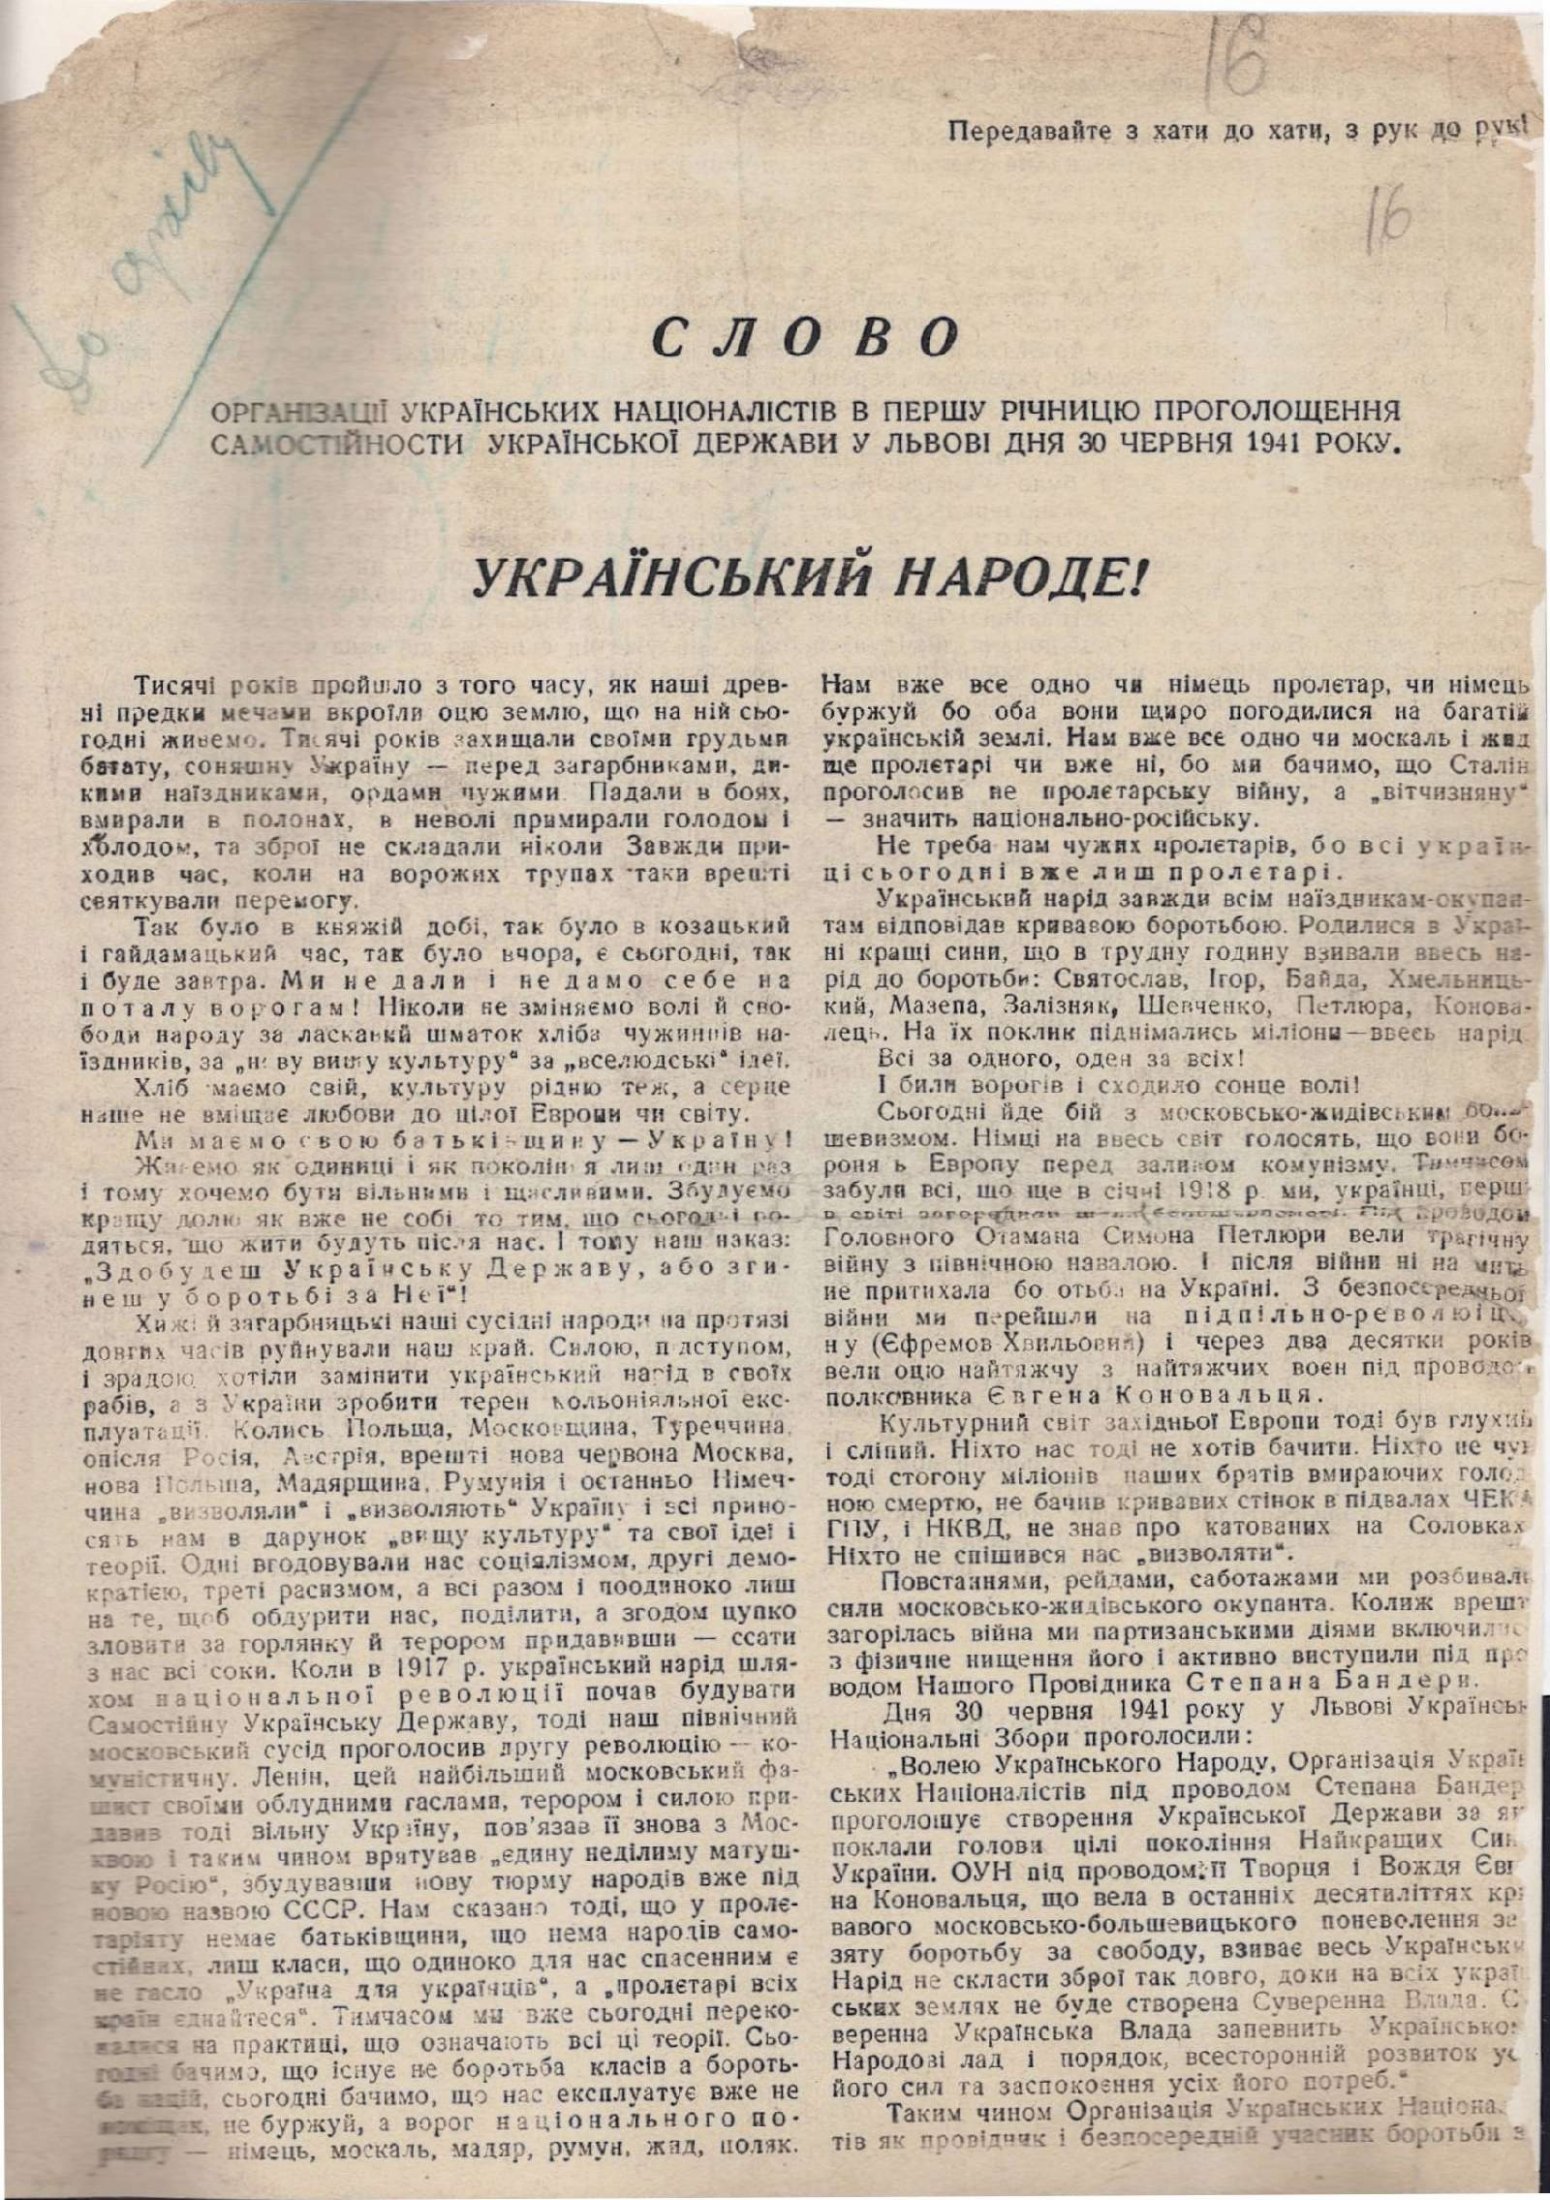 Звернення Організації українських націоналістів в першу річницю проголошення самостійності Української держави у Львові 30 червня 1941 р. 30 червня 1942 р.